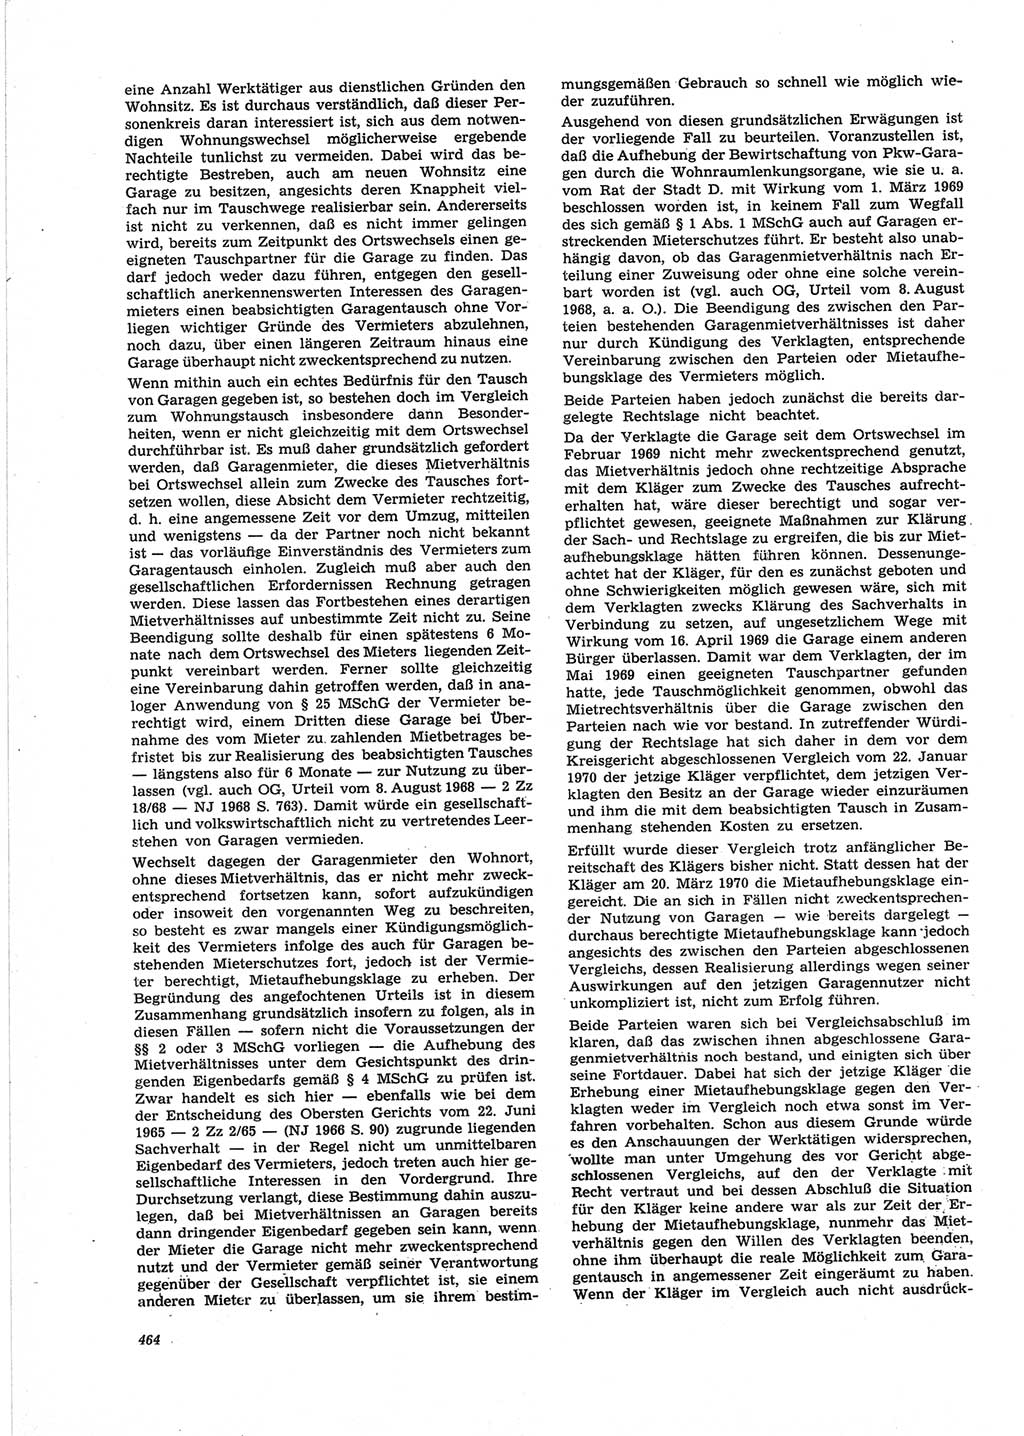 Neue Justiz (NJ), Zeitschrift für Recht und Rechtswissenschaft [Deutsche Demokratische Republik (DDR)], 25. Jahrgang 1971, Seite 464 (NJ DDR 1971, S. 464)